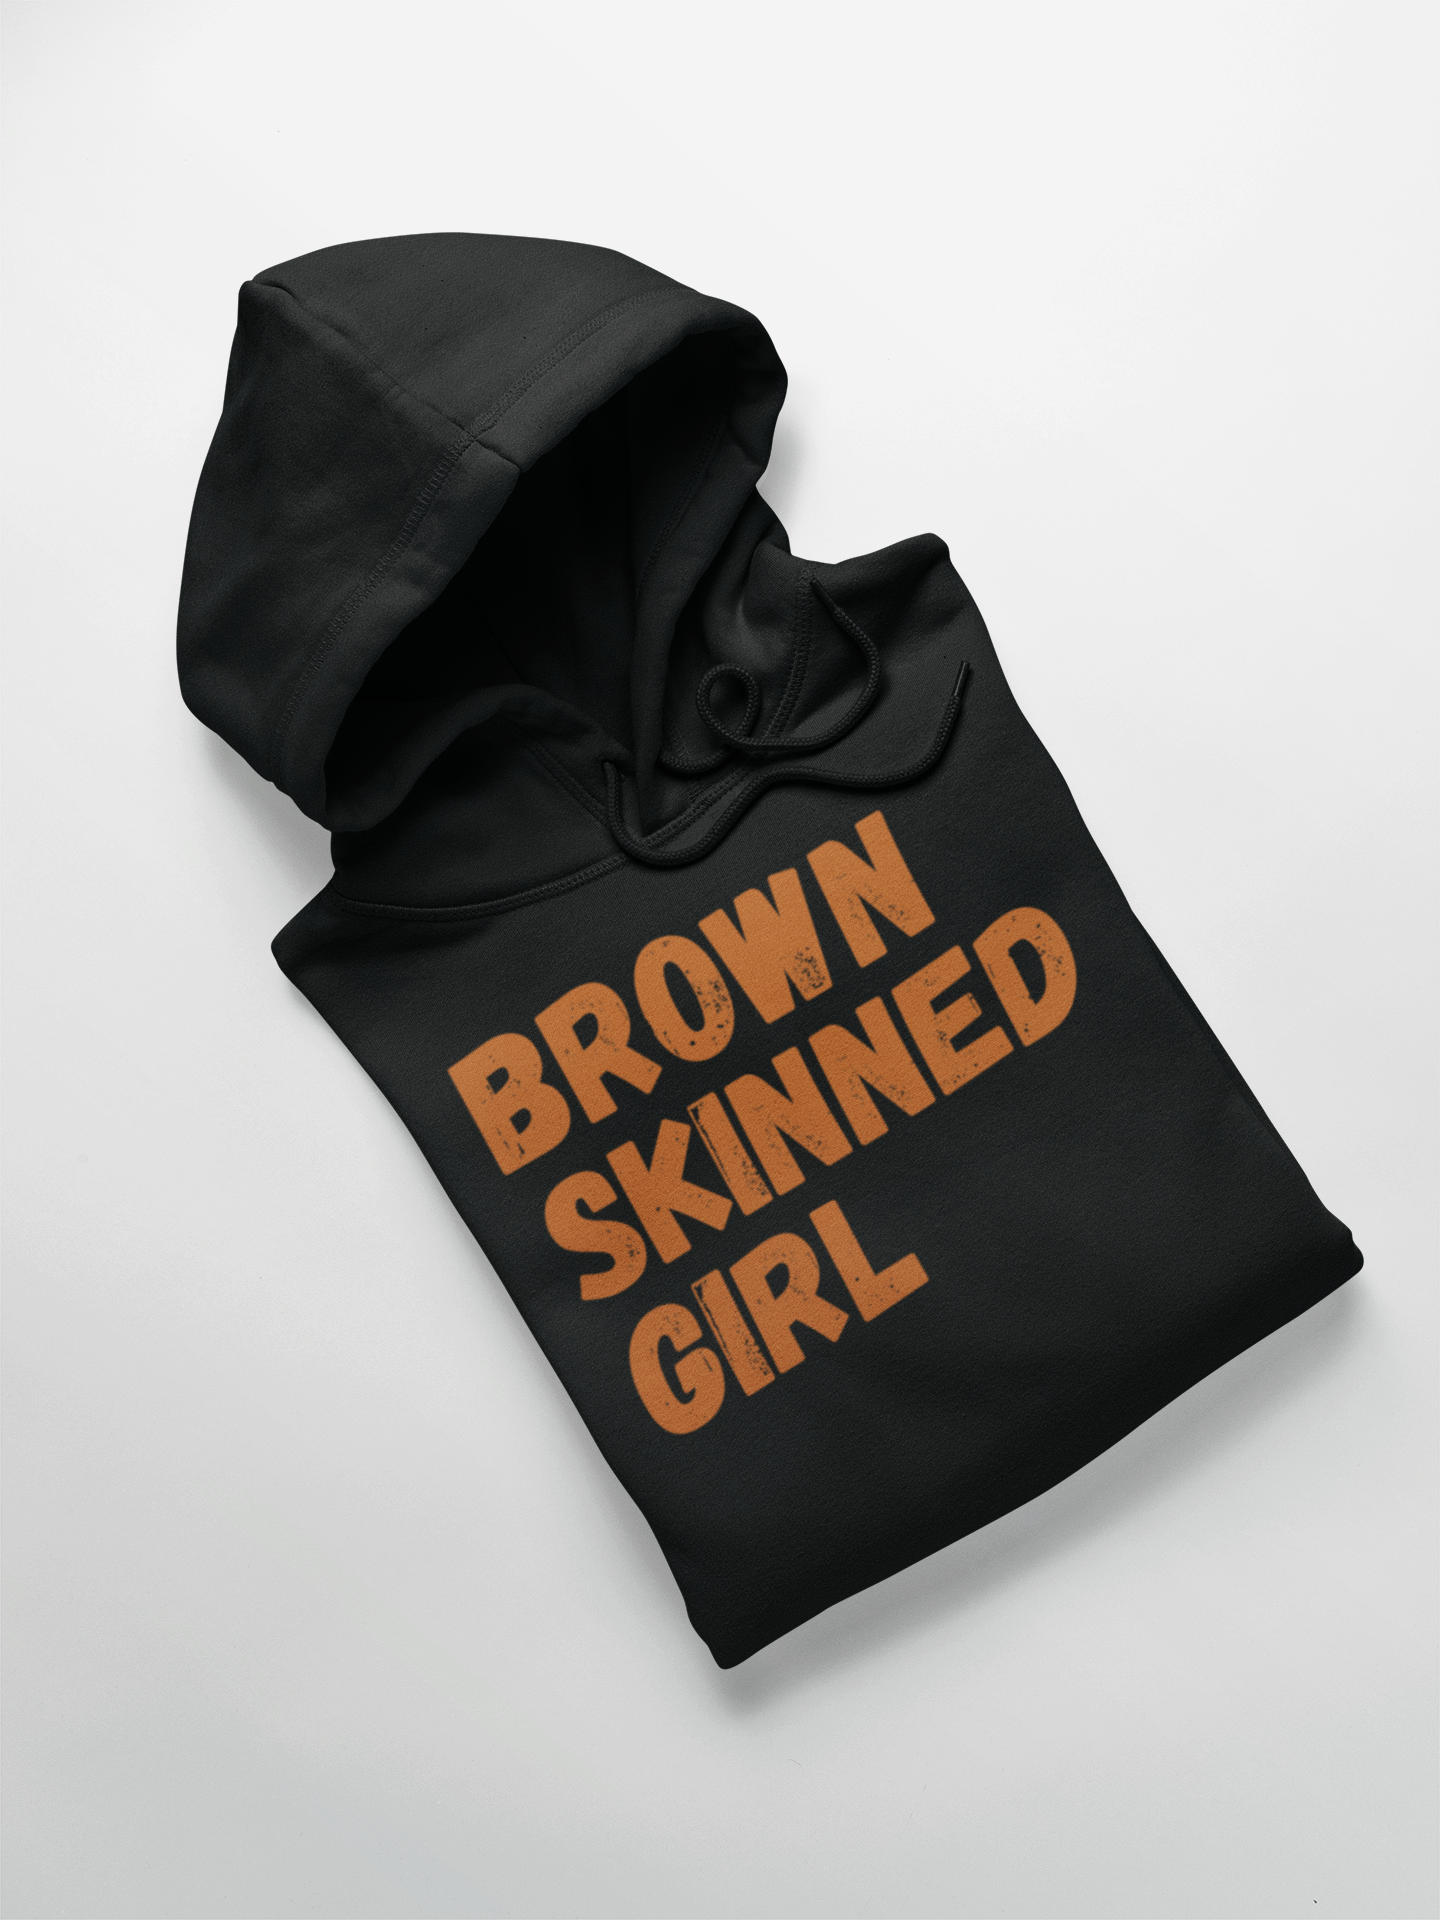 Brown Skinned Girl Hoodie